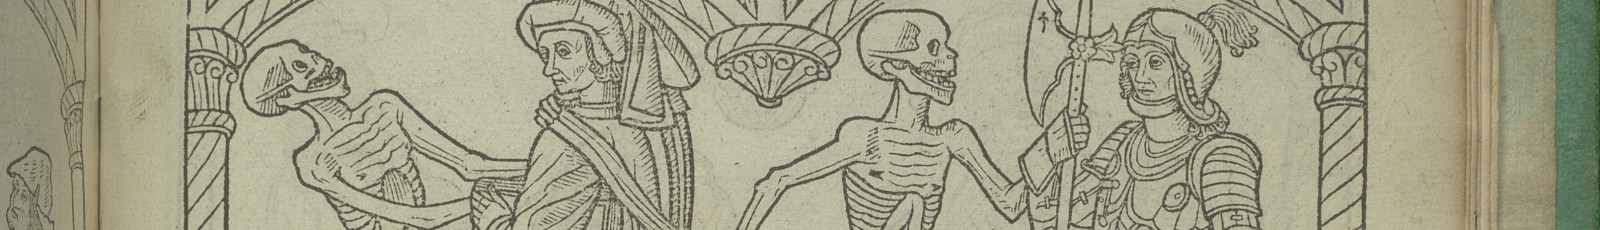 [Danse macabre : ] Chorea ab eximio Macabro. Paris : Guy Marchant pour Geoffroy de Marnef, 1490. Bibliothèque Mazarine : Inc 593, f. b1